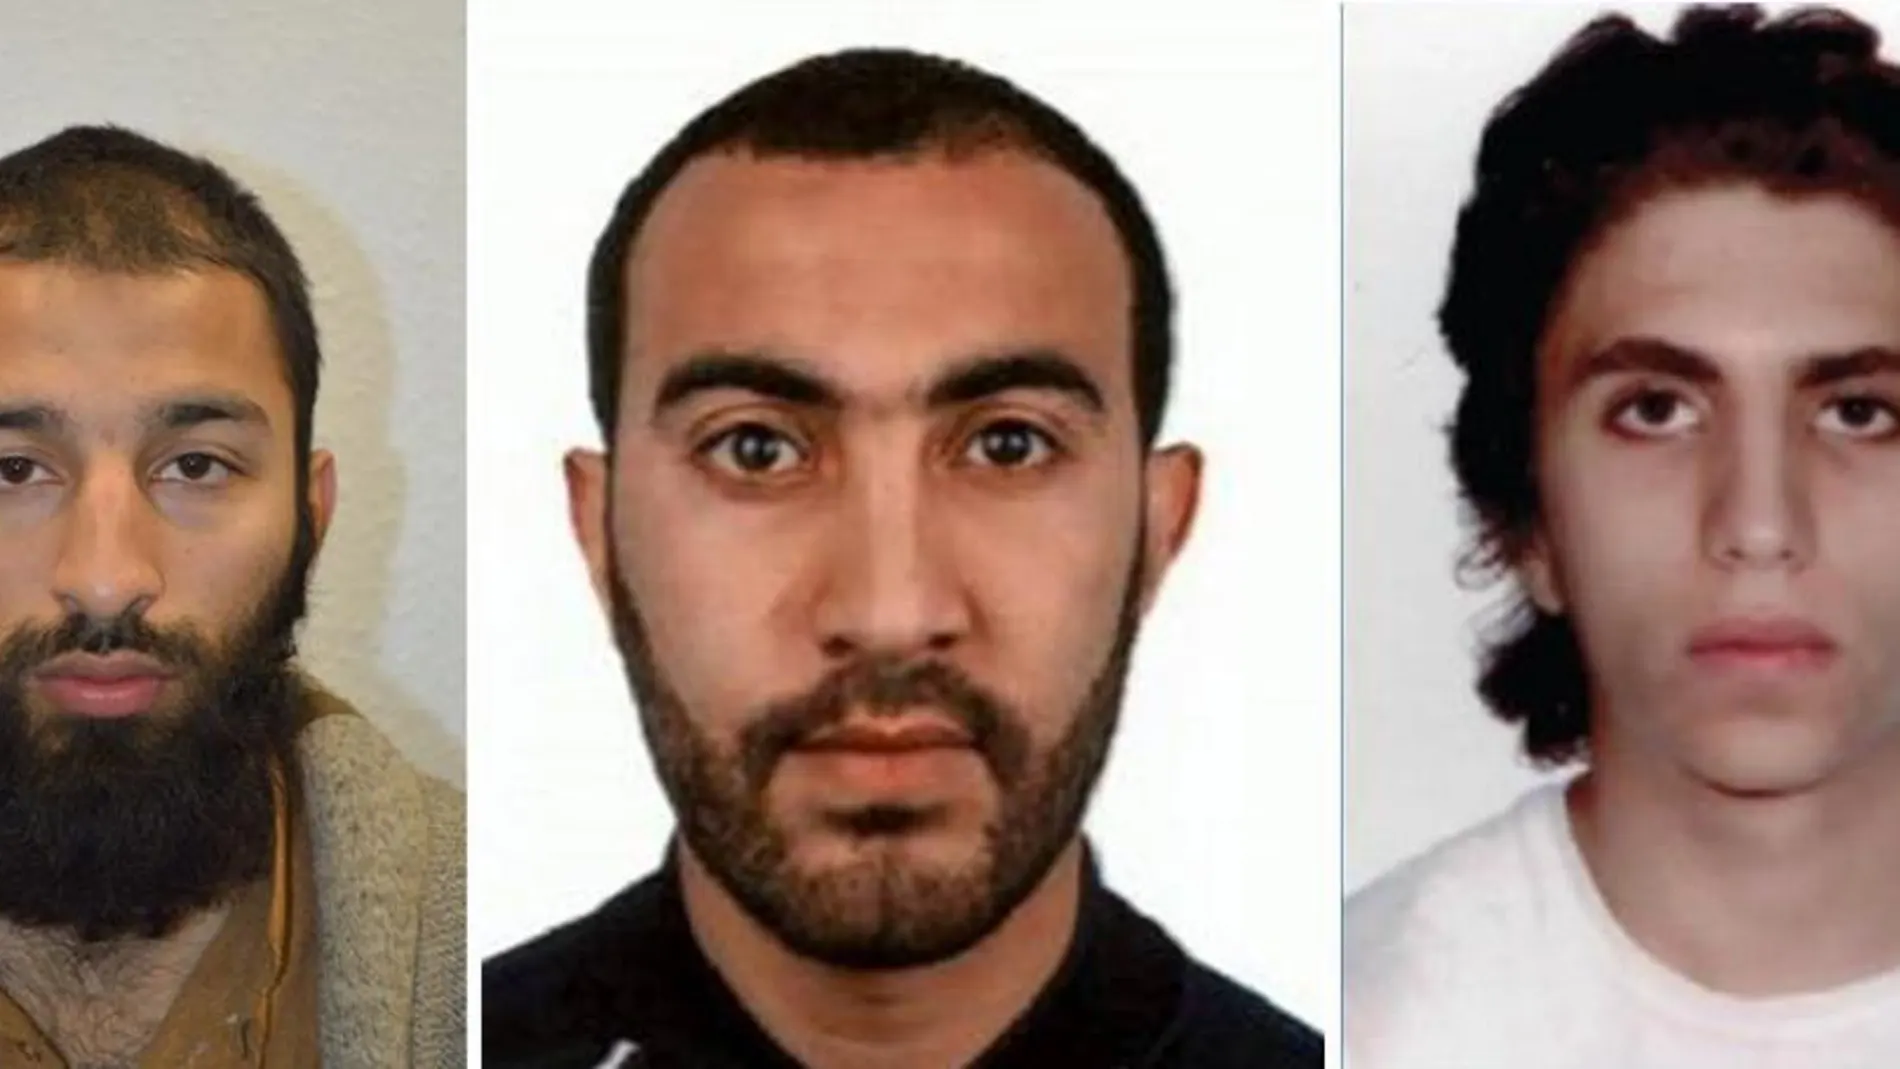 Los tres hombres identificados por la policía como los tres terroristas del atentado de Londres (de i a d) Khuram Shazad Butt, Rachid Redouane y Youssef Zaghba.